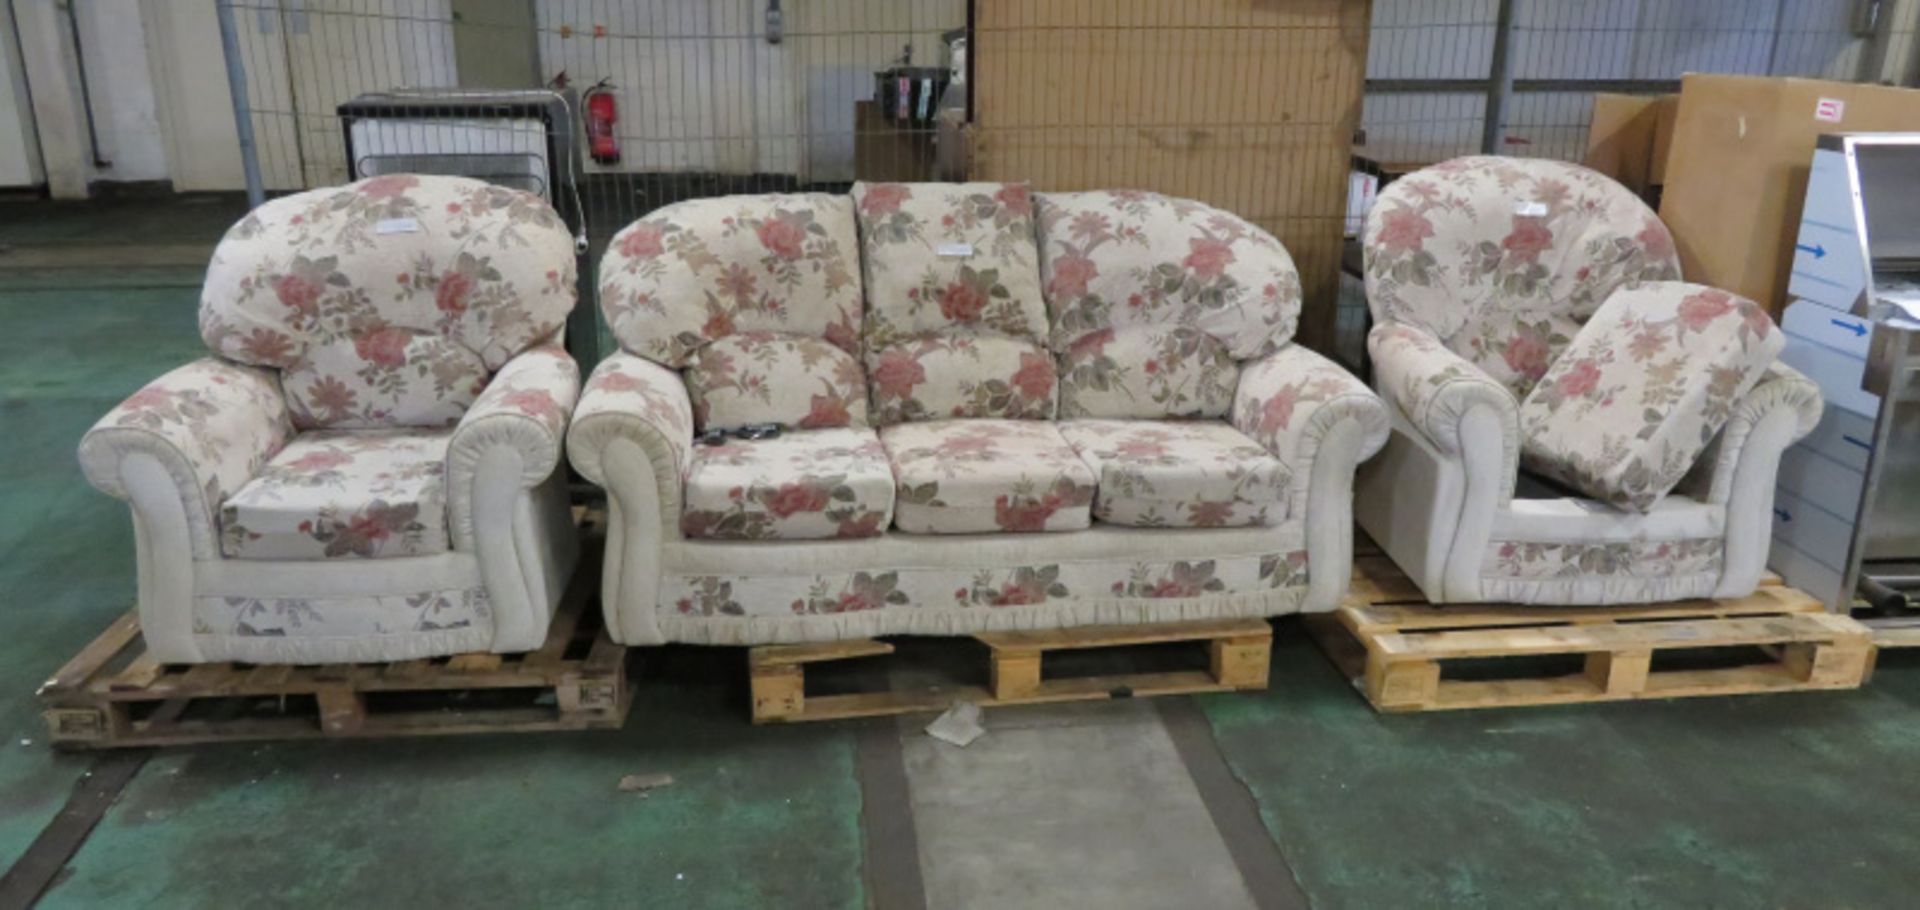 3 Piece Sofa & Chair Set - Sofa - L 1850mm x D 860mm x H 900mm, Chairs - L 950mm x D 820mm x H 950mm